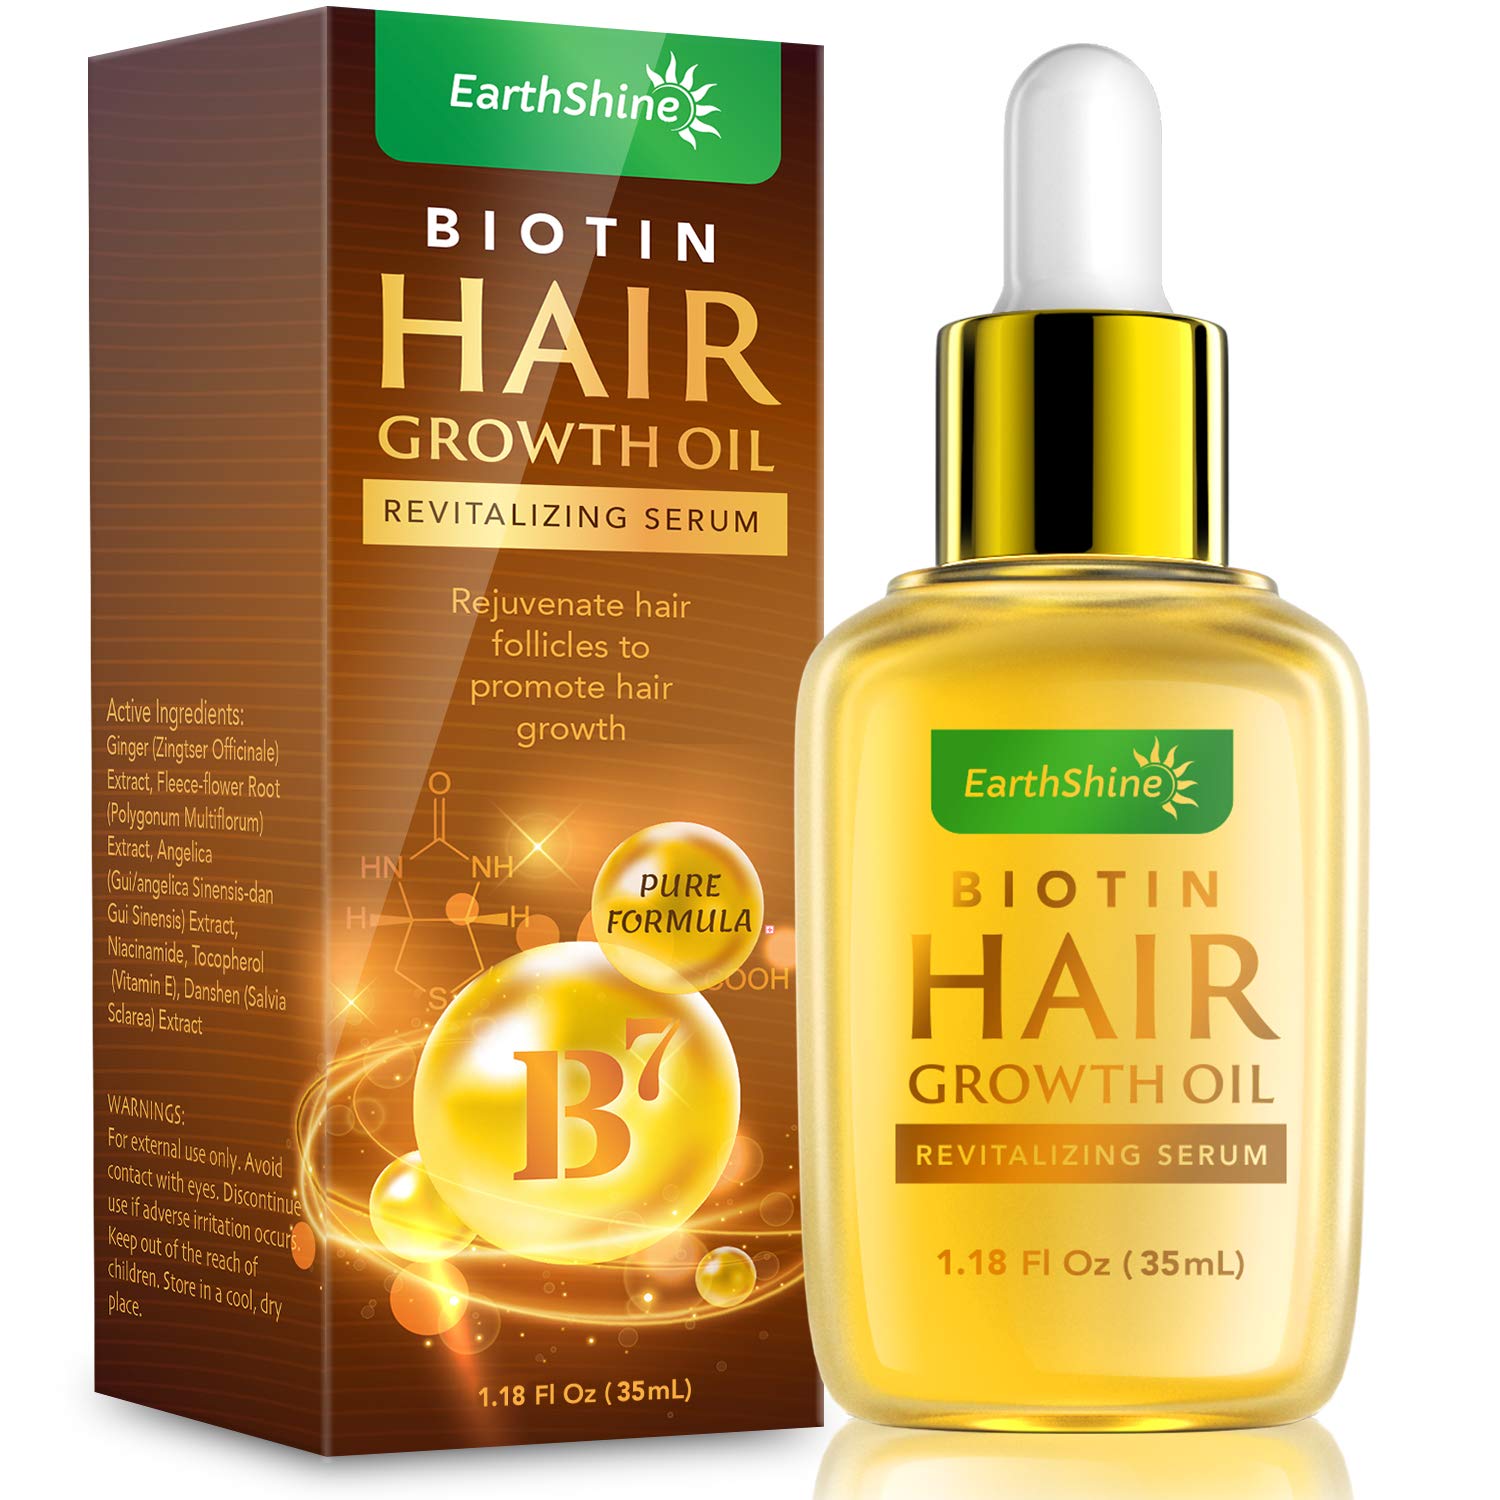 EarthShine Biotin Hair Growth Oil